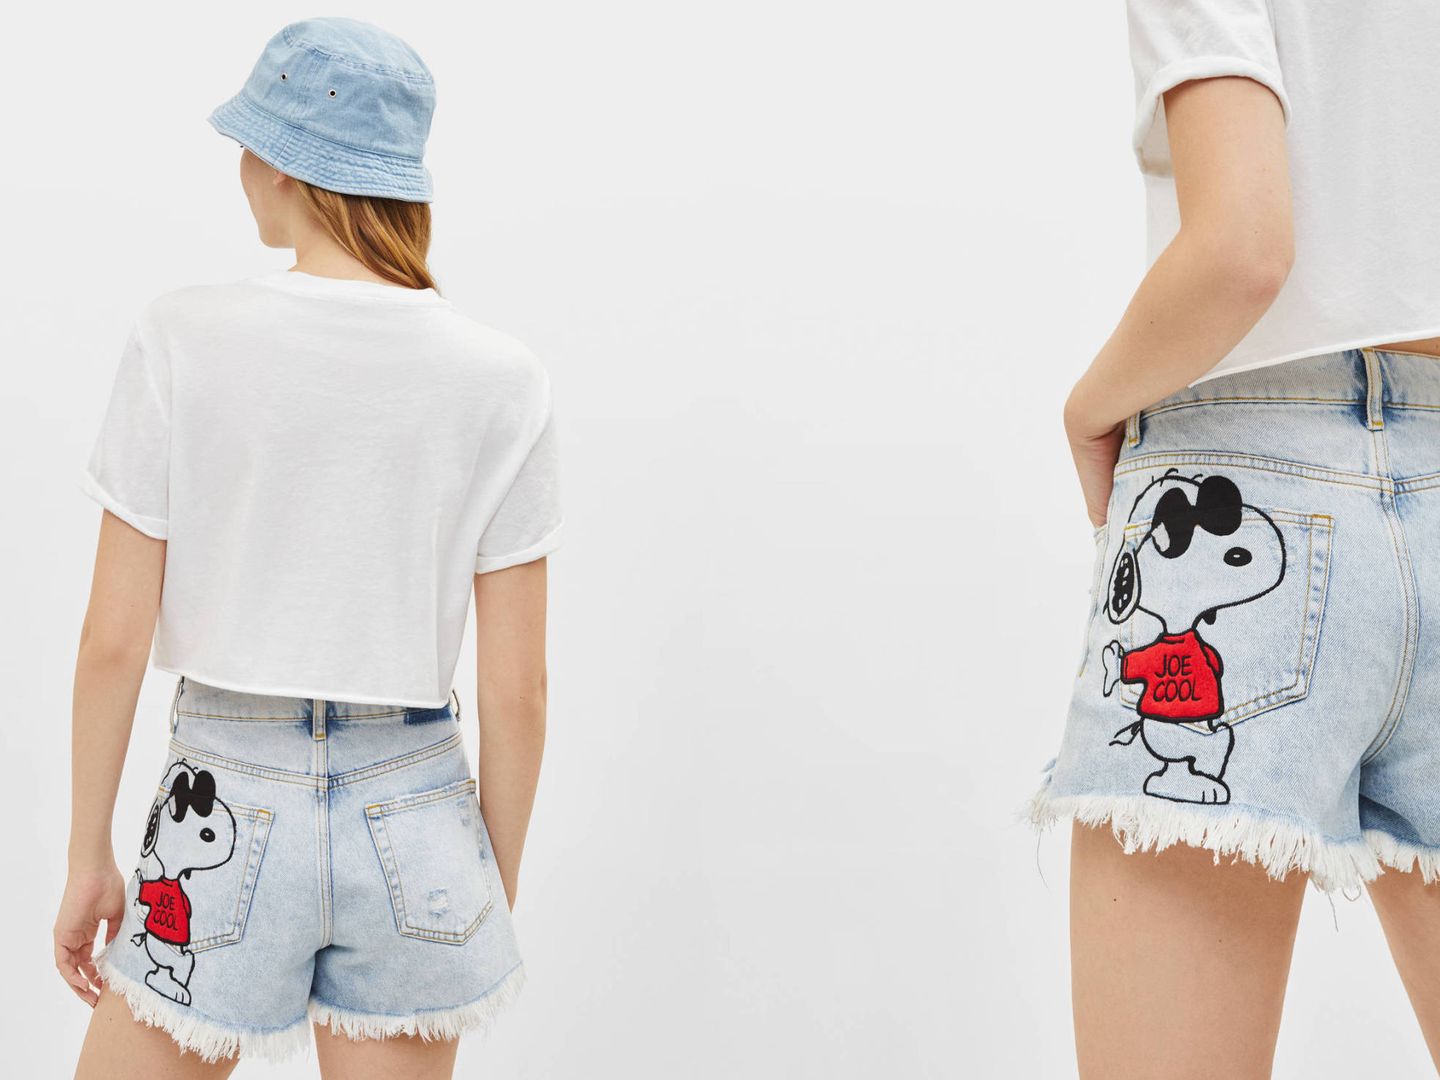 Shorts de Snoopy en Bershka (25,99 euros).